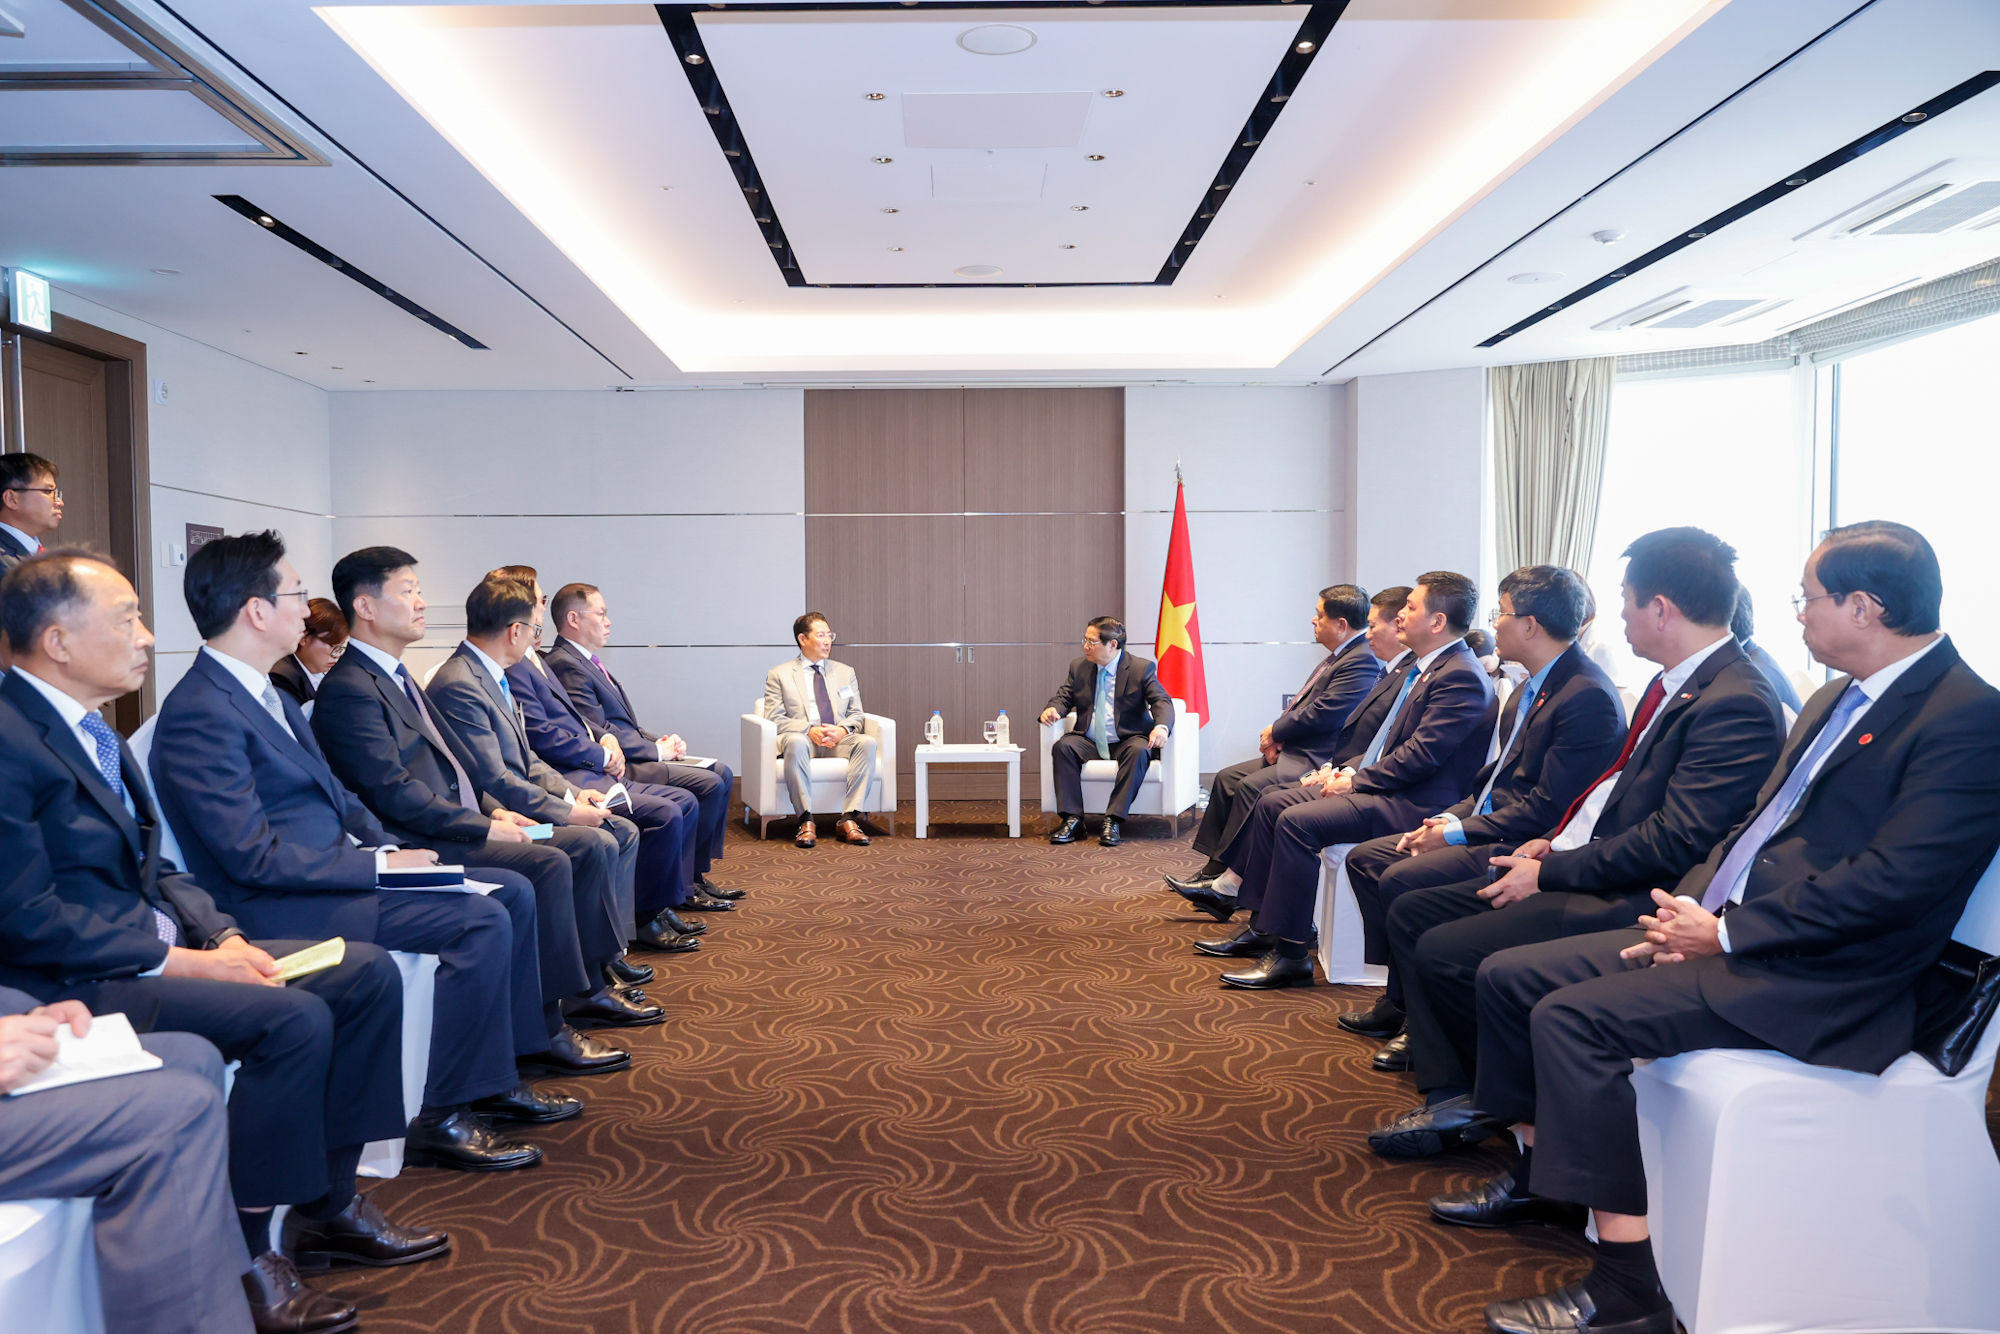 Thủ tướng ủng hộ việc ký kết MOU giữa Hyosung và tỉnh Bà Rịa – Vũng Tàu nhằm phát triển tỉnh Bà Rịa – Vũng Tàu thành trung tâm sản xuất công nghệ sinh học, vật liệu tiên tiến của Việt Nam và khu vực - Ảnh: VGP/Nhật Bắc